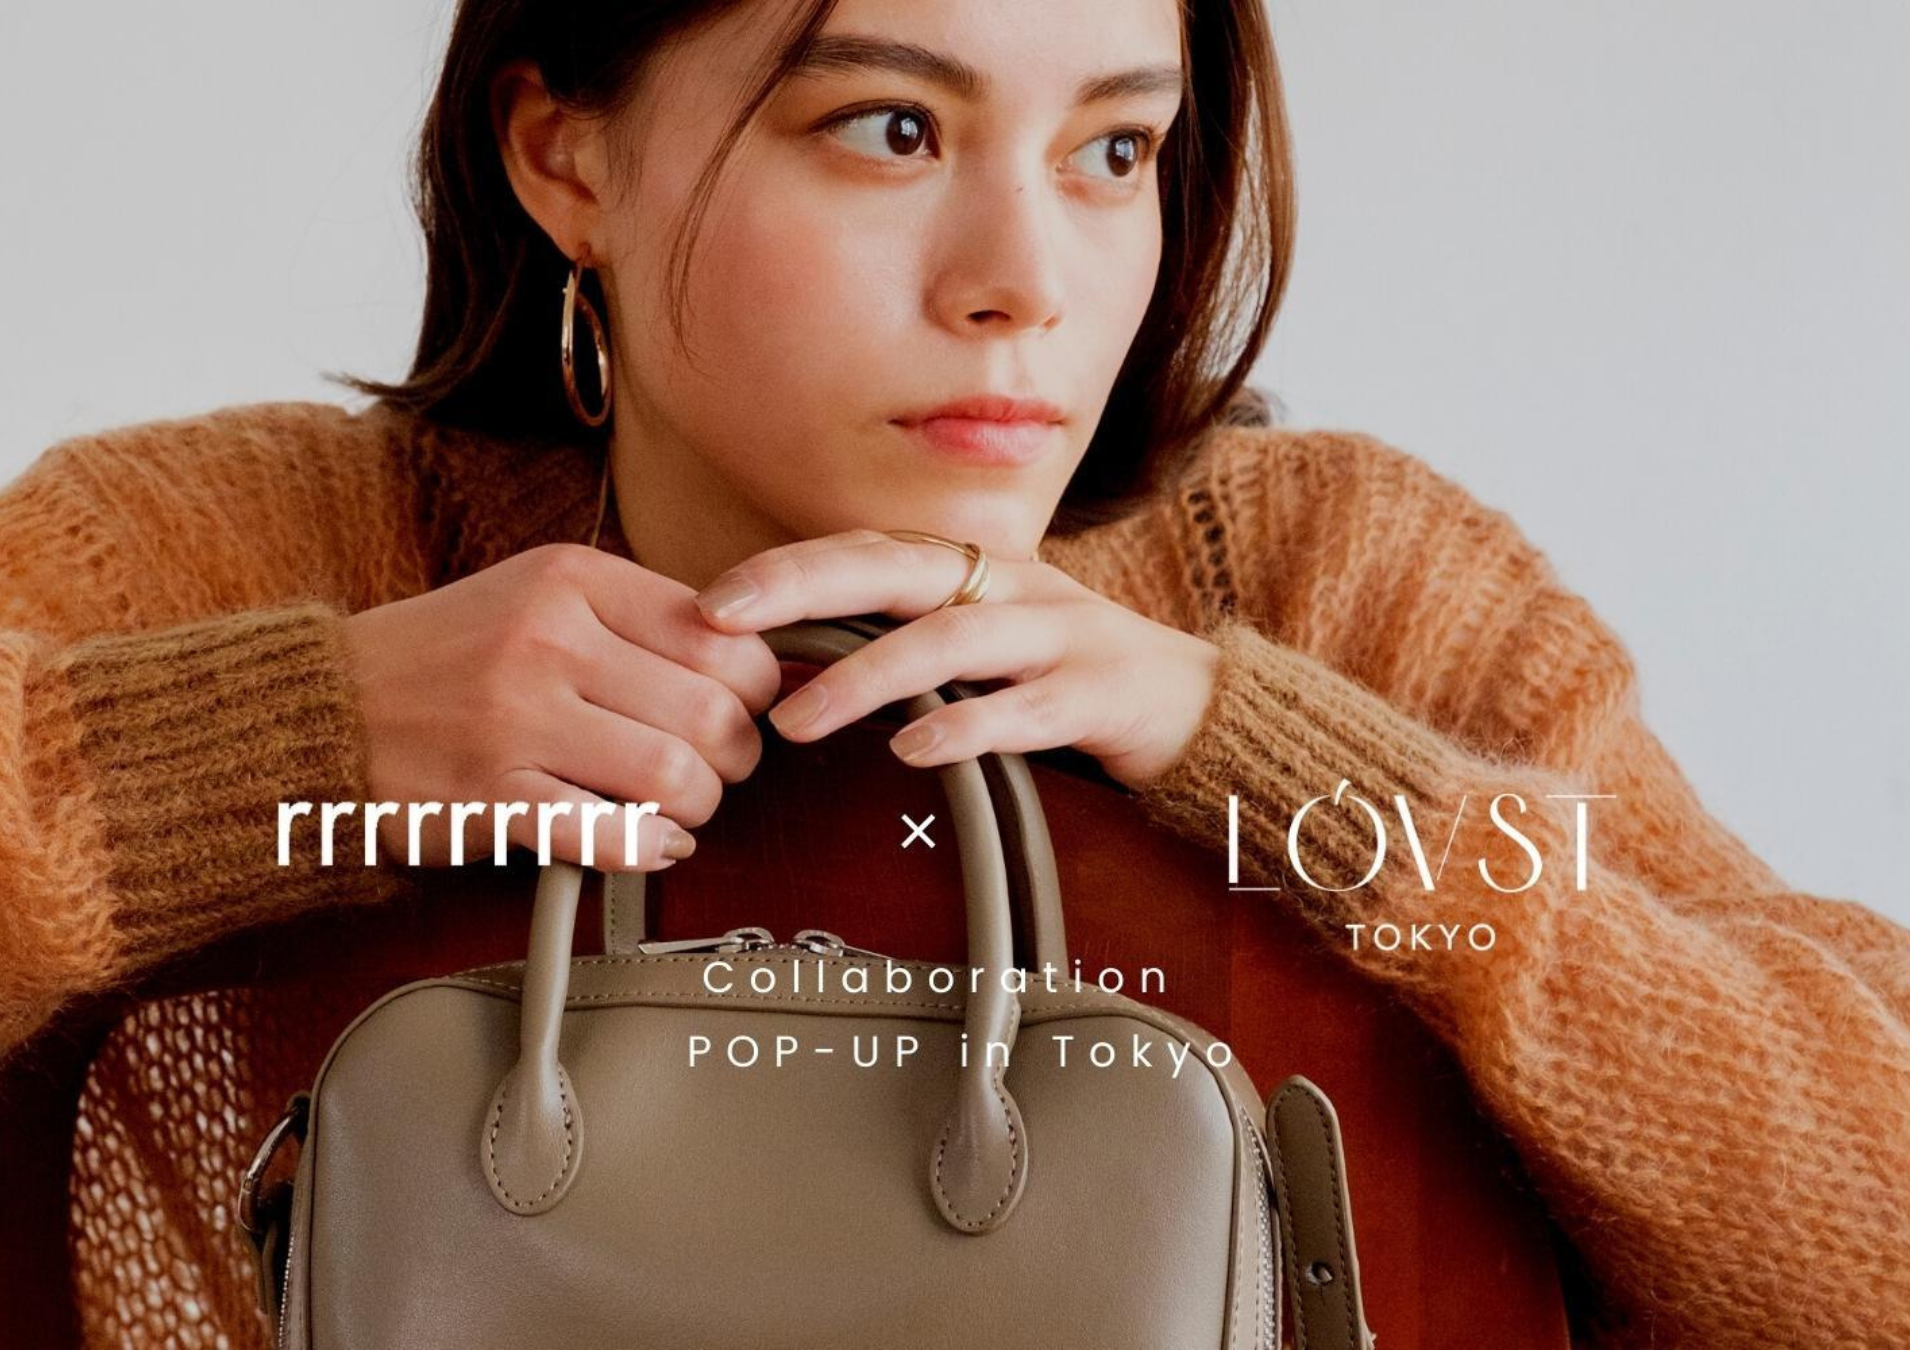 【コラボPOP-UP】rrrrrrrrr × LOVST TOKYO Collaboration POP-UP in Tokyoのお知らせ